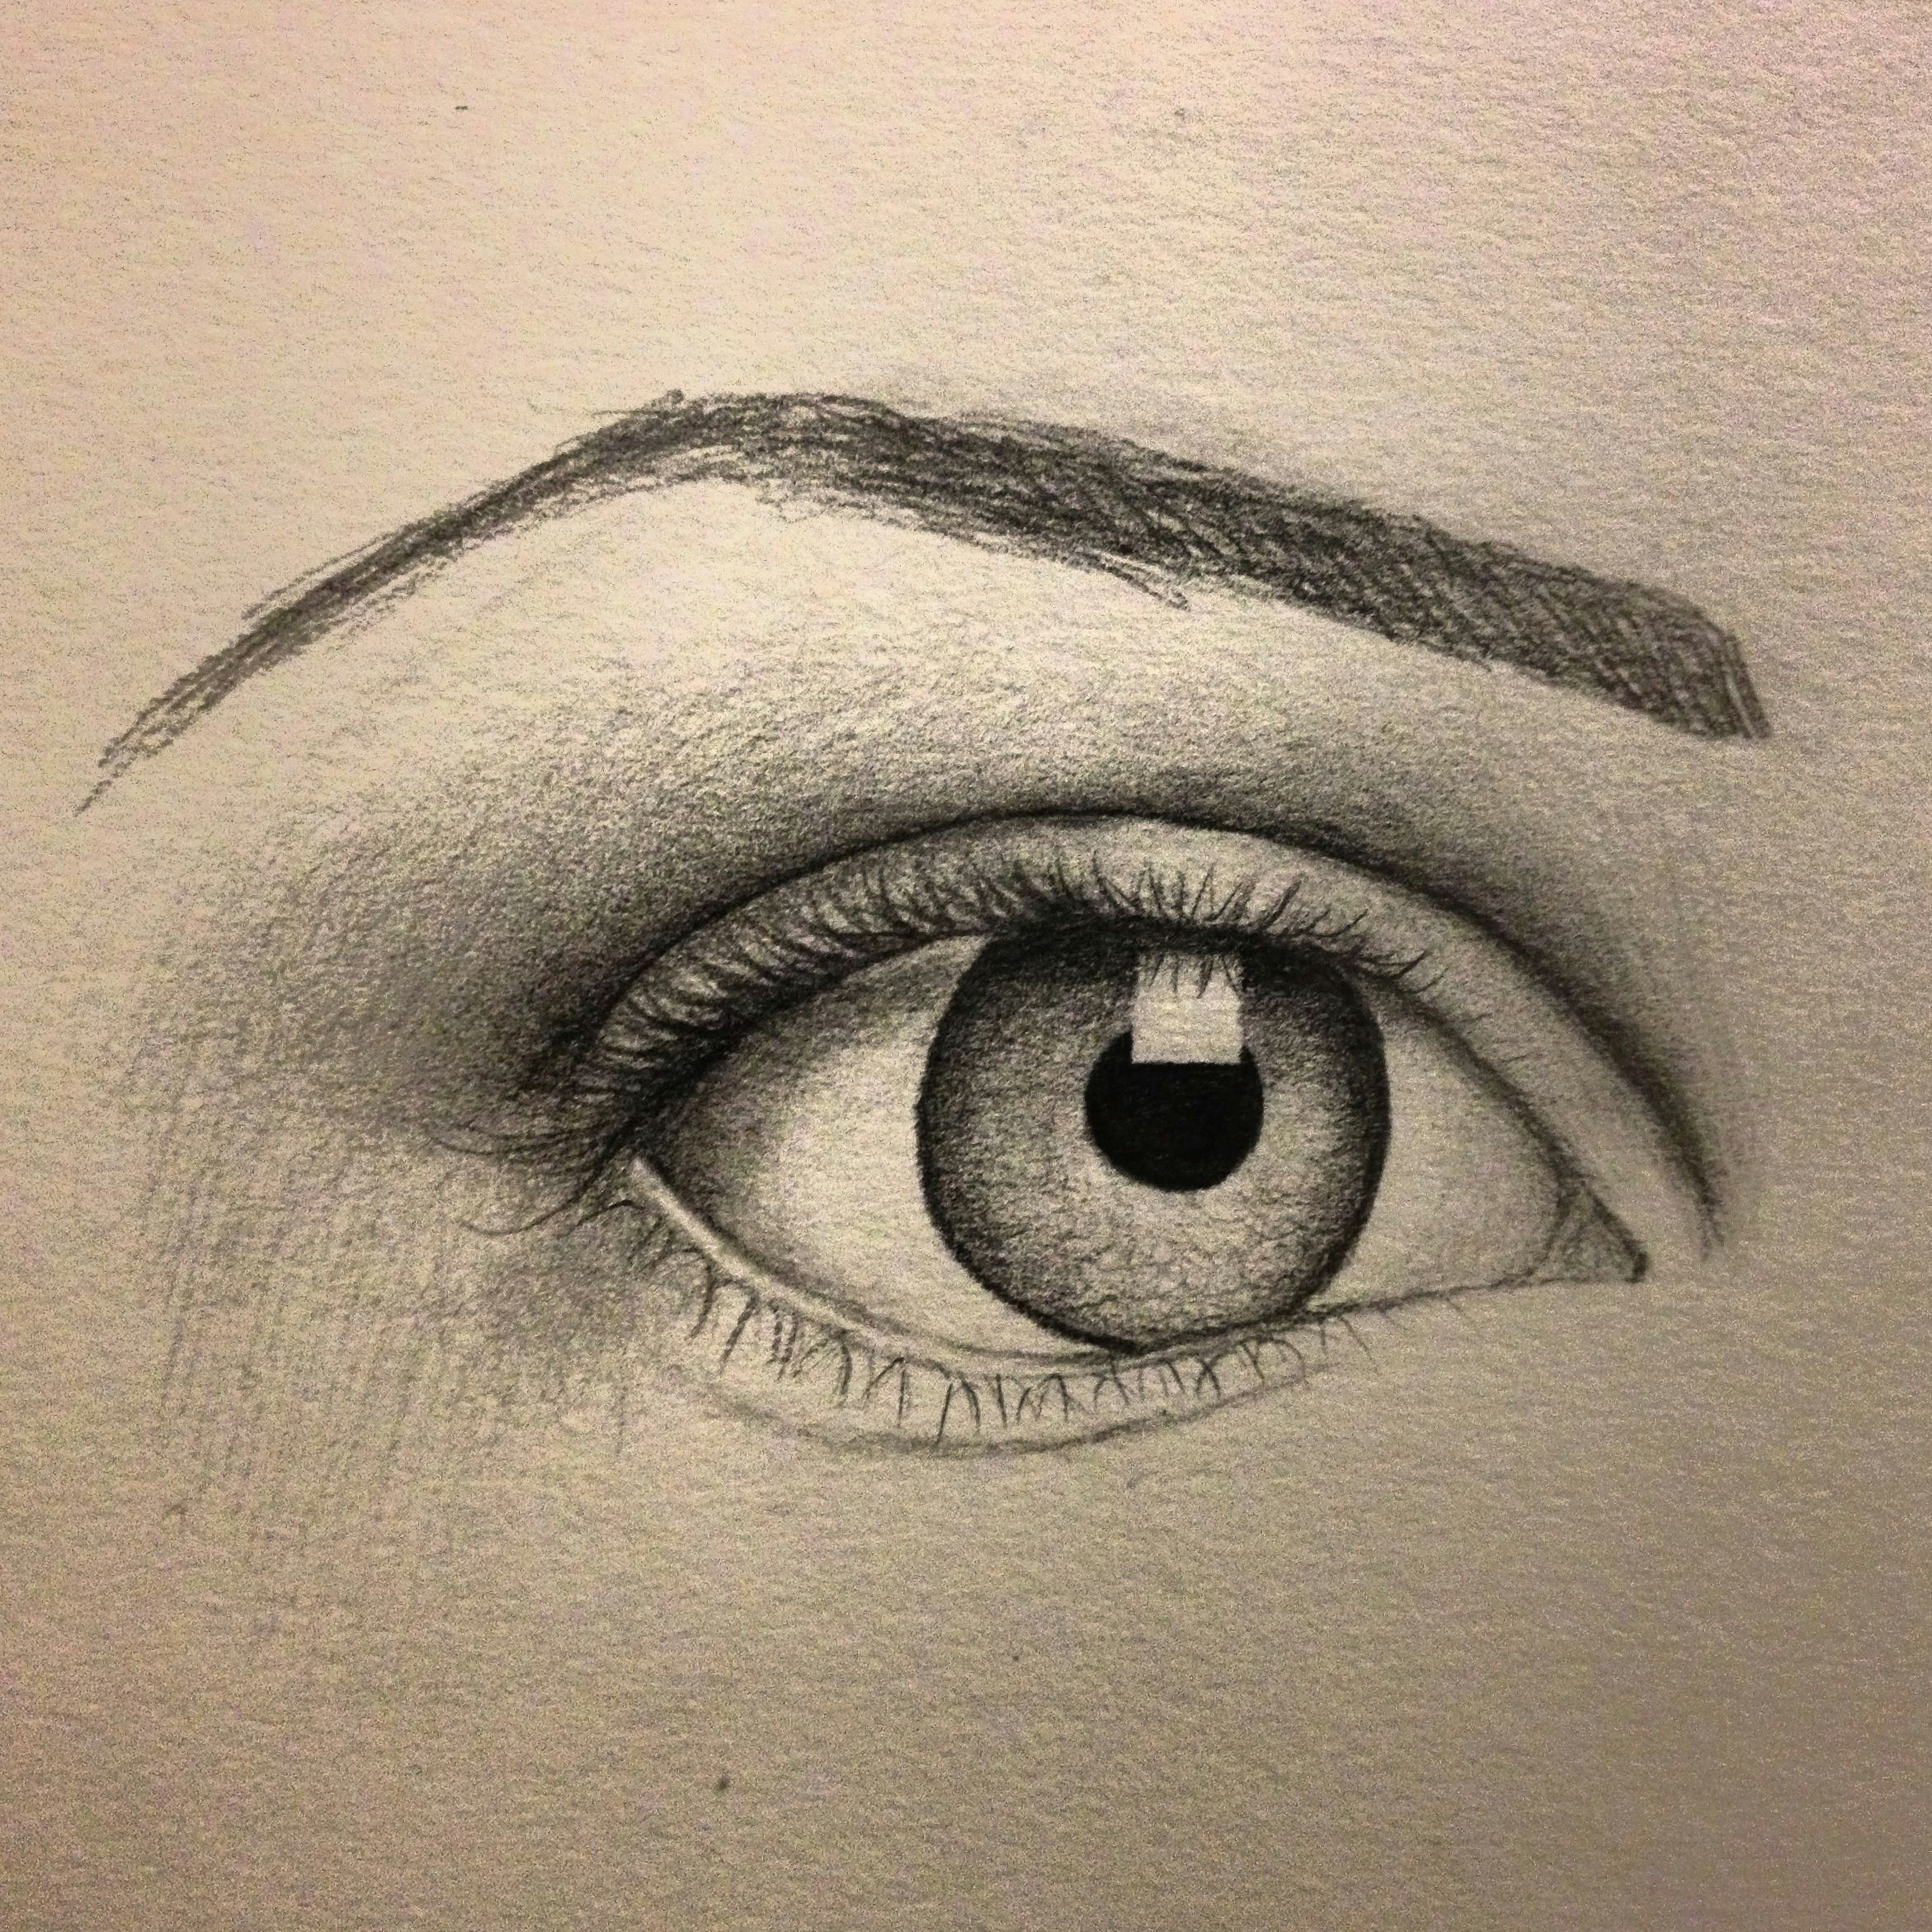 Drawings Of Eyes and Eyebrows Eye Sketch Artist Pamela White Tattoos Pinterest Drawings